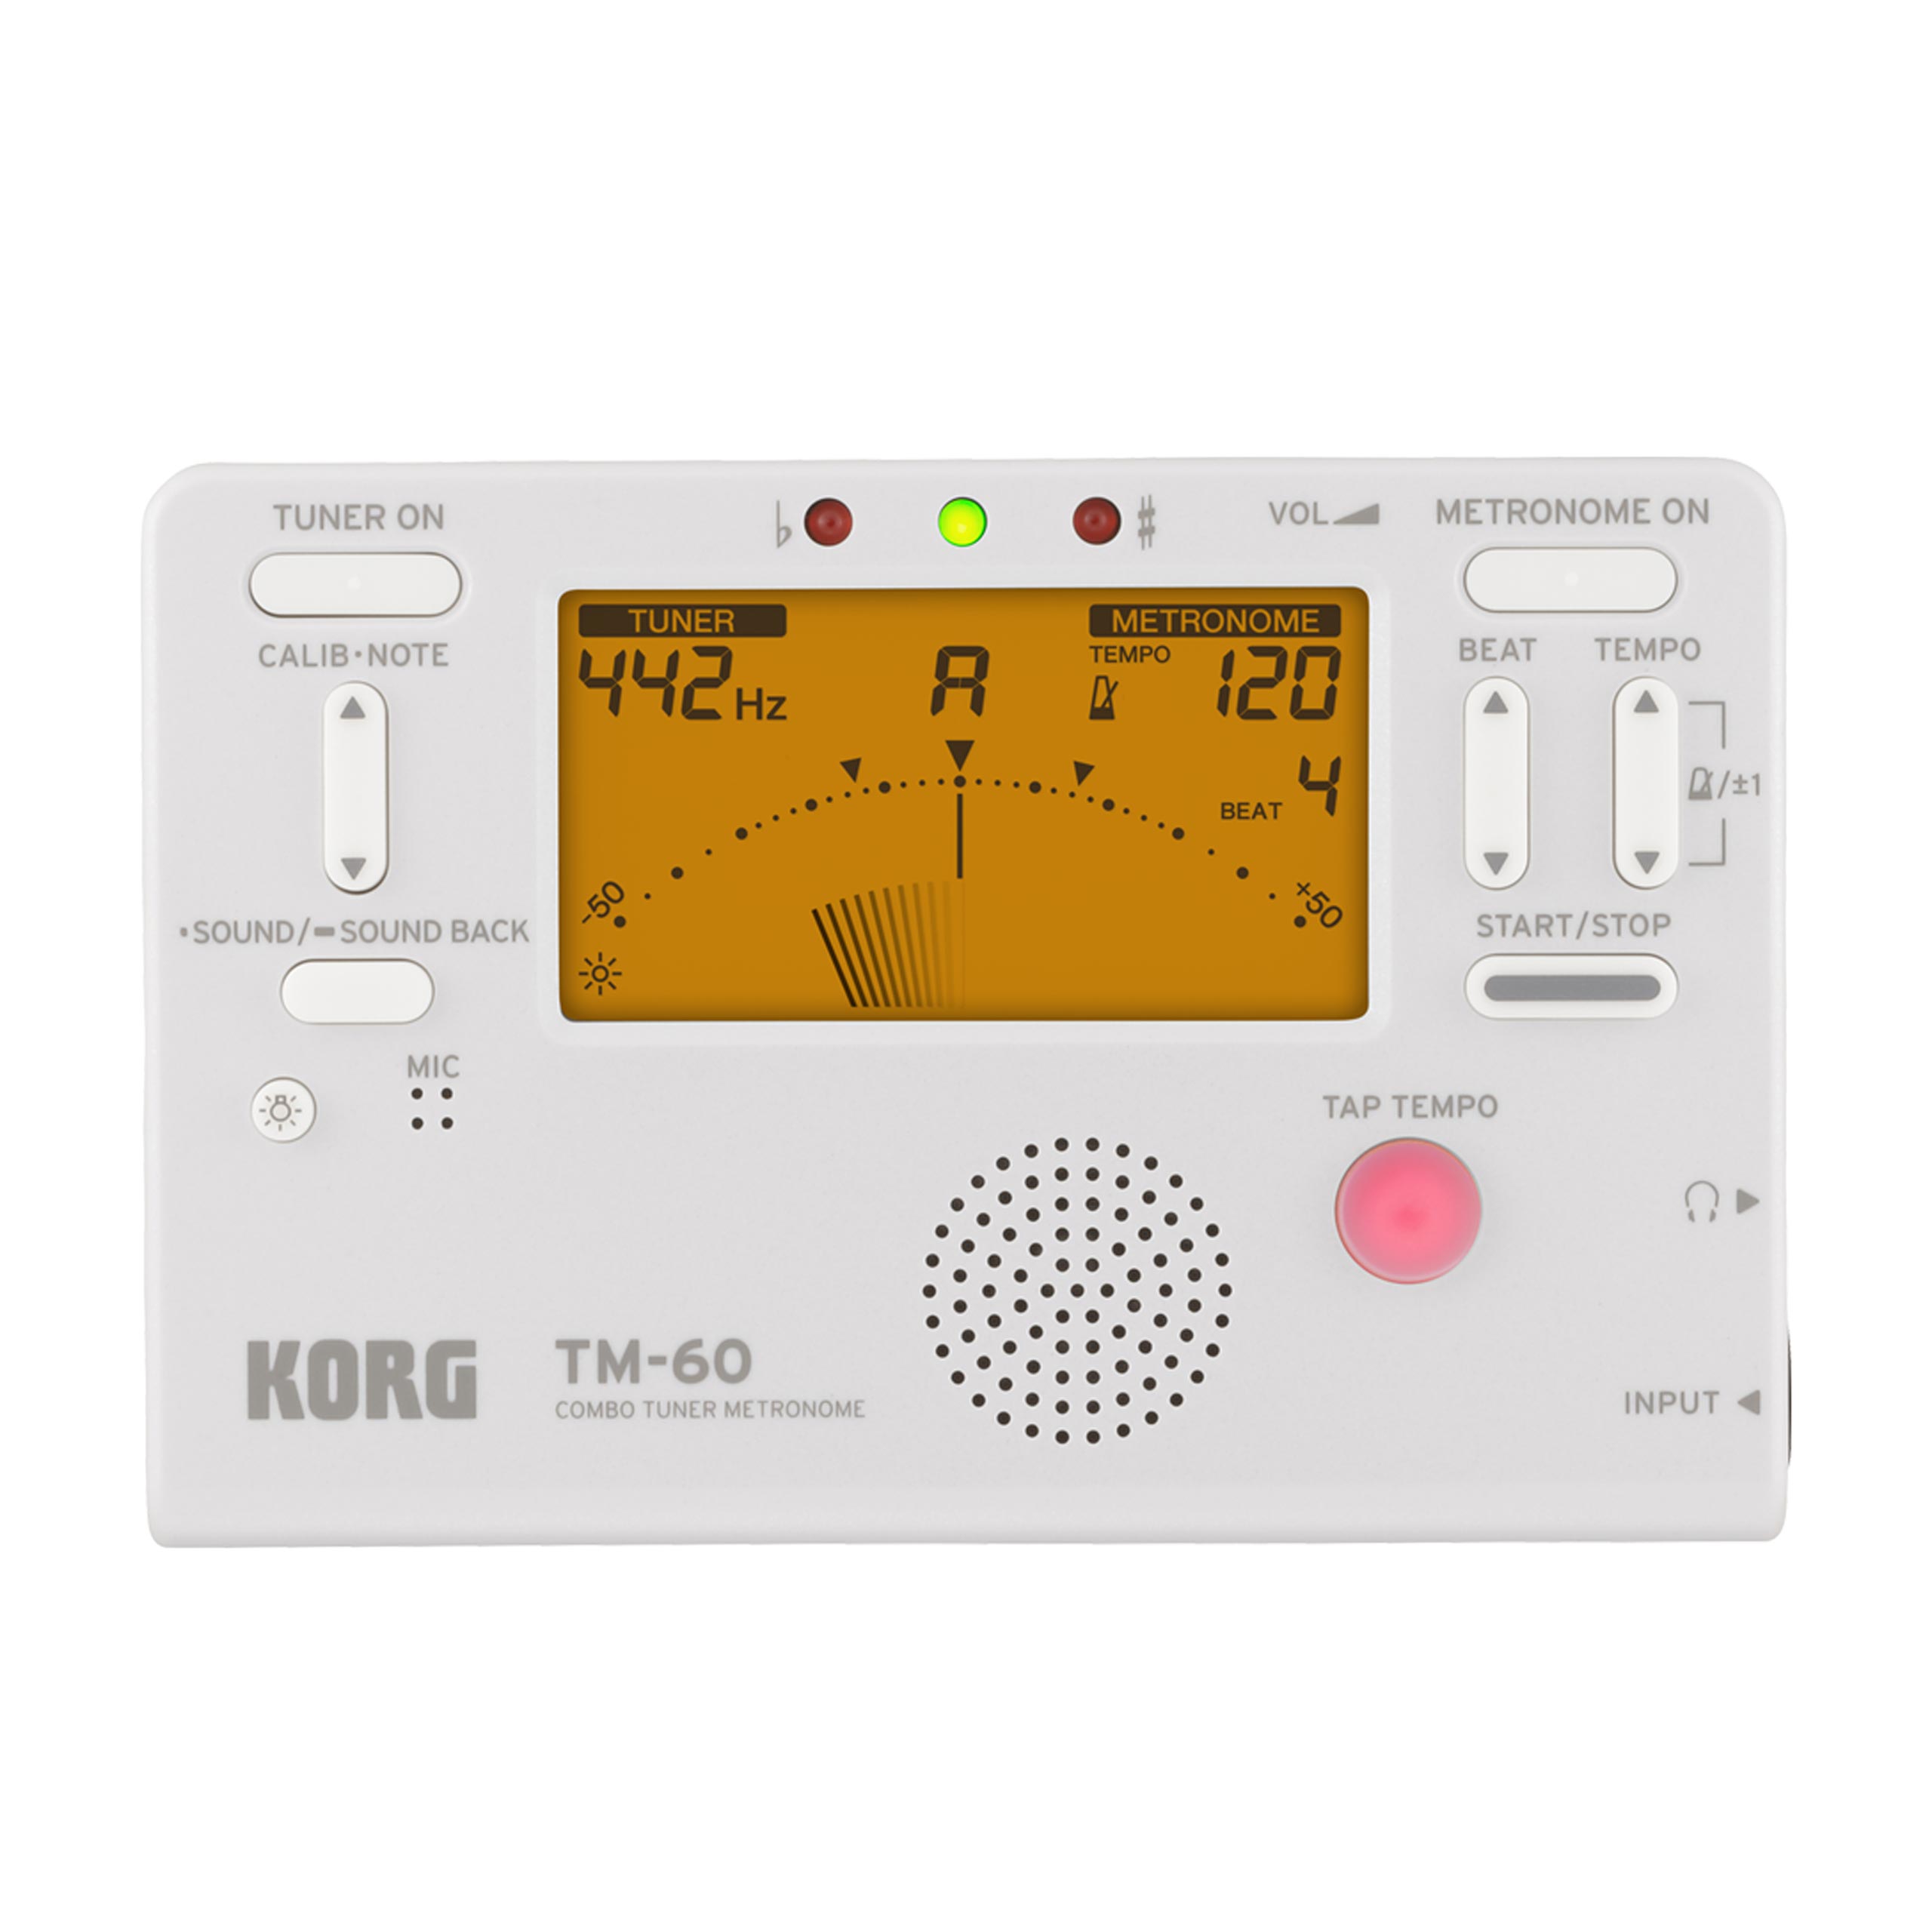 Korg TM-60 Combo Tuner Metronome in White